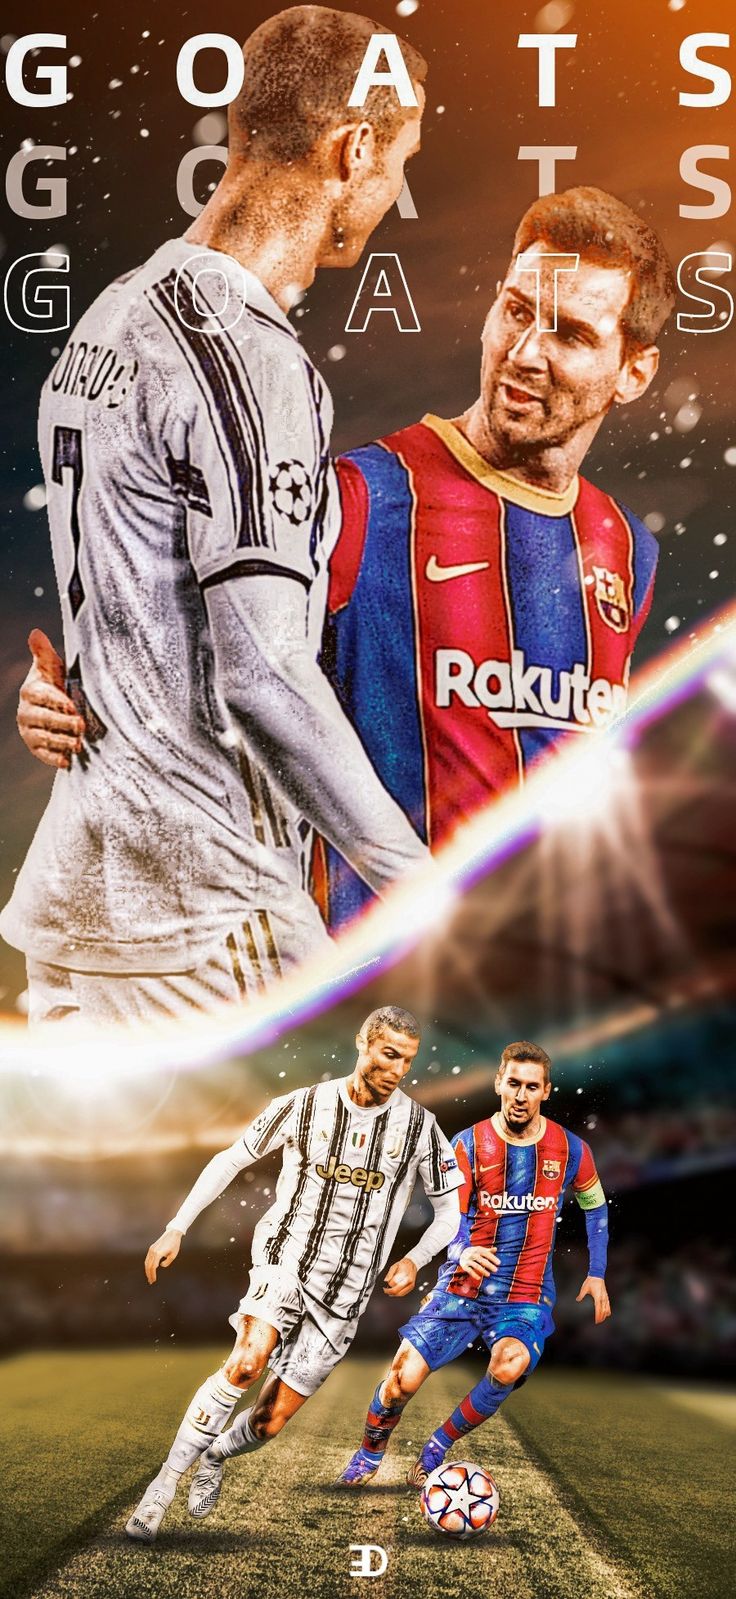 Messi, Neymar và Ronaldo: Đây là ba trong số những cầu thủ hàng đầu thế giới và đội hình mơ ước của bất kỳ fan bóng đá nào. Hãy cùng xem hình ảnh của Messi, Neymar và Ronaldo để tận hưởng những khoảnh khắc tuyệt vời của bóng đá.